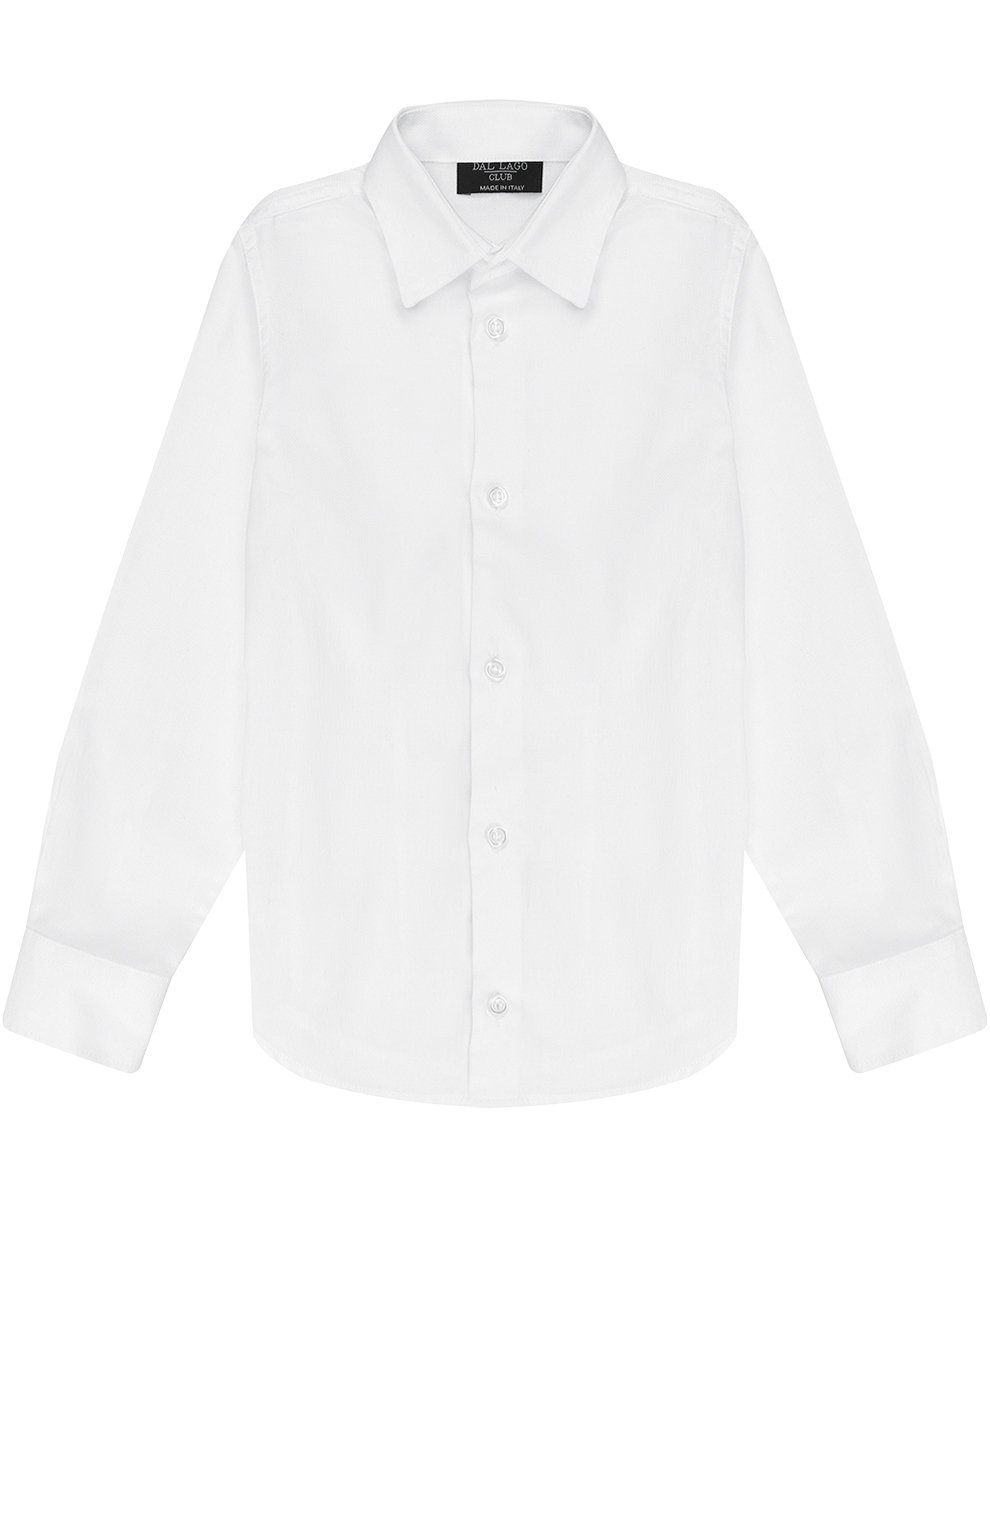 Рубашки Dal Lago, Хлопковая рубашка прямого кроя Dal Lago, Италия, Белый, Хлопок: 100%;, 2297027  - купить